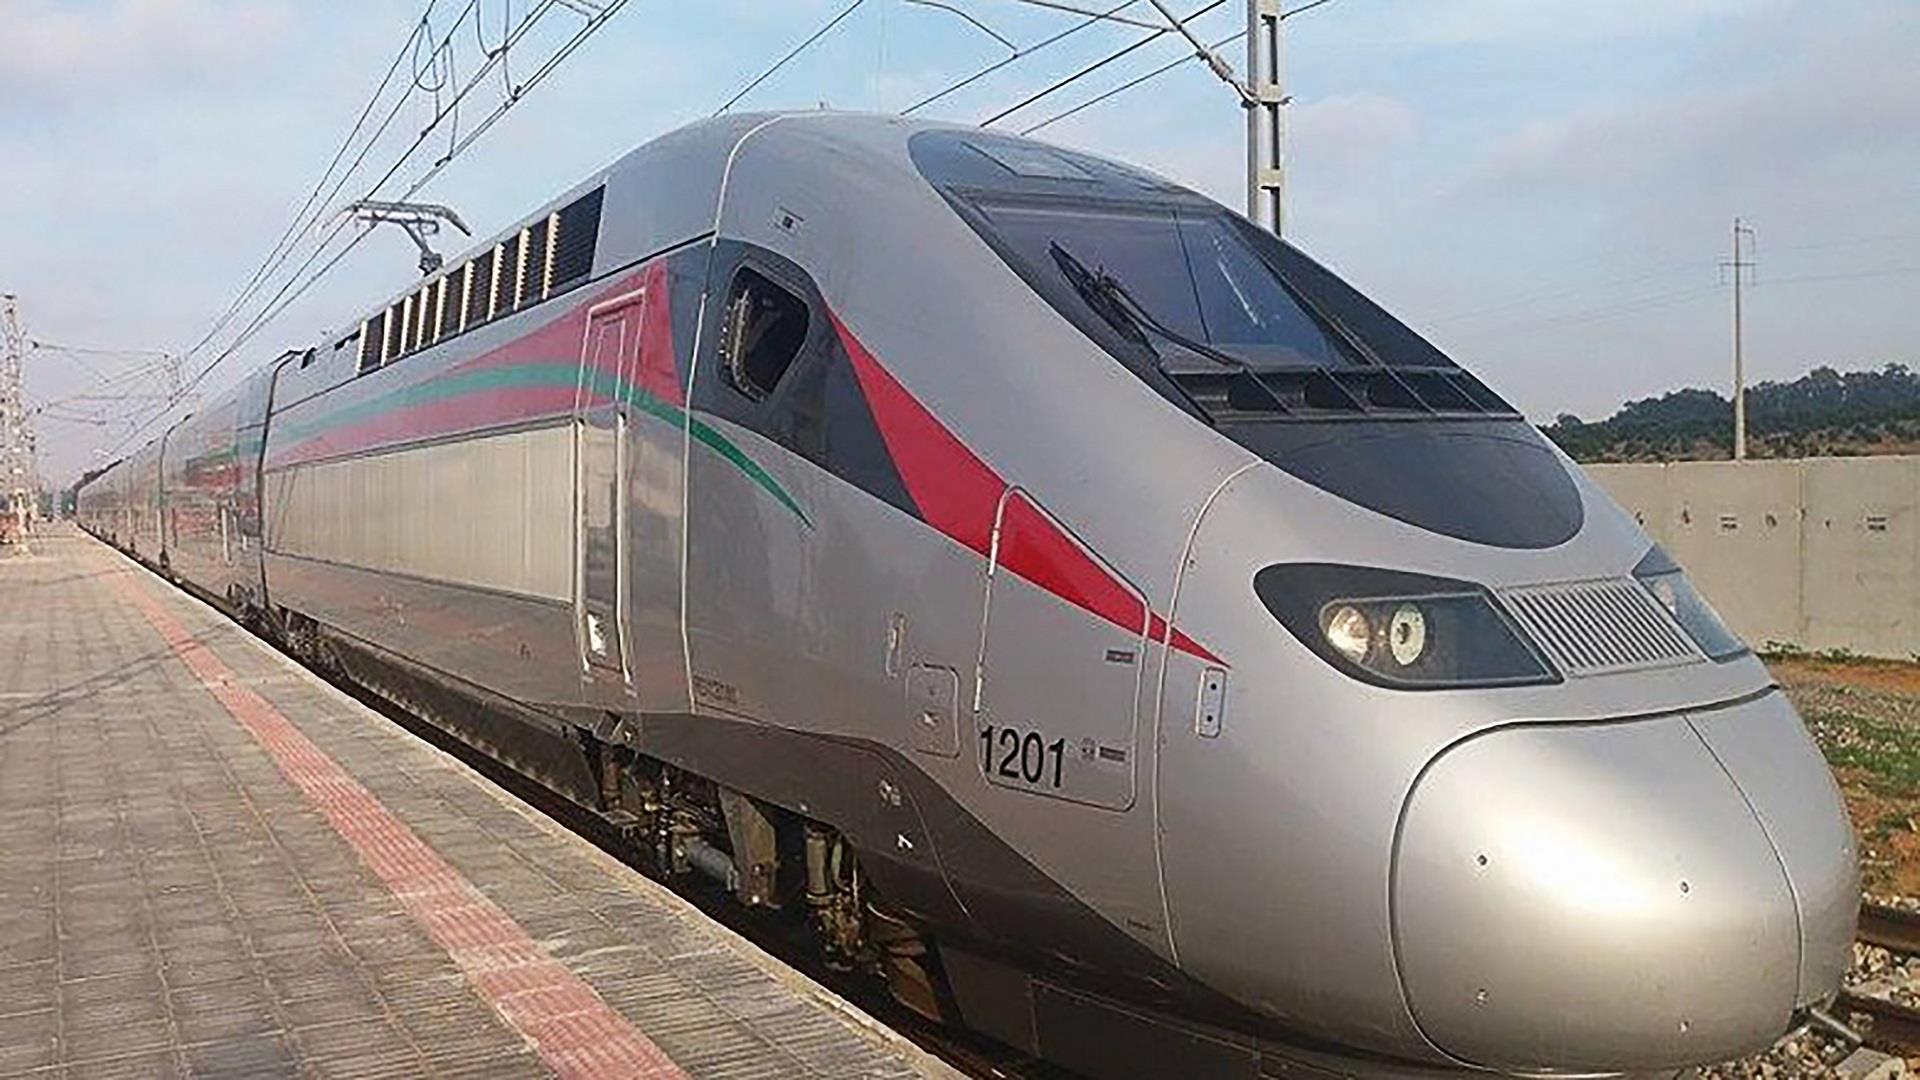 وزير النقل واللوجستيك: نعمل على إيجاد حلول مبتكرة لتمويل مشروع خط القطار فائق السرعة الدار البيضاء -أكادير